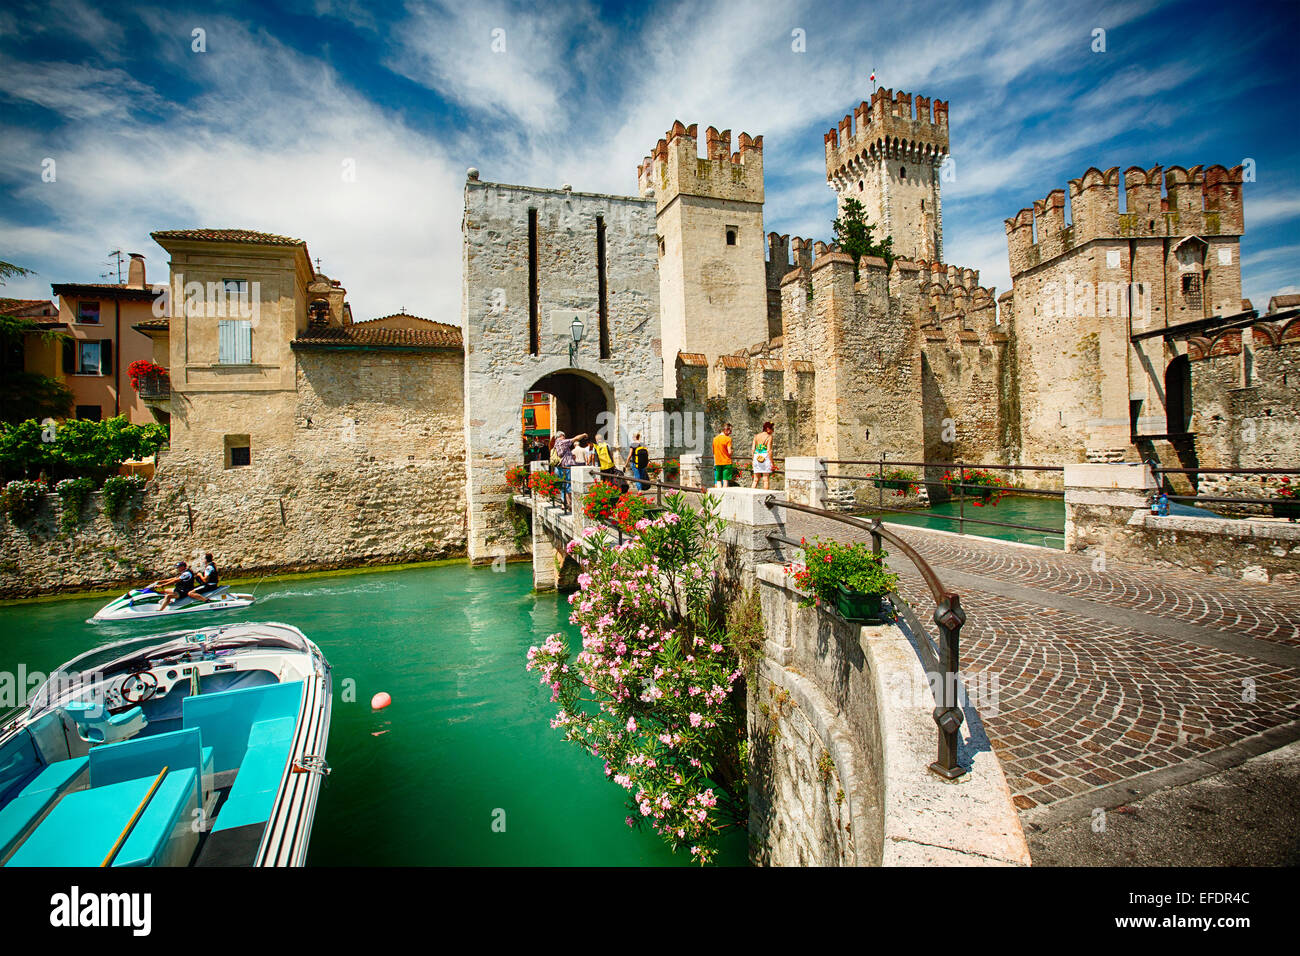 Vista di un castello nel lago, Castello Scaligero, Sirmione sul Lago di Garda, Lombardia, Italia Foto Stock